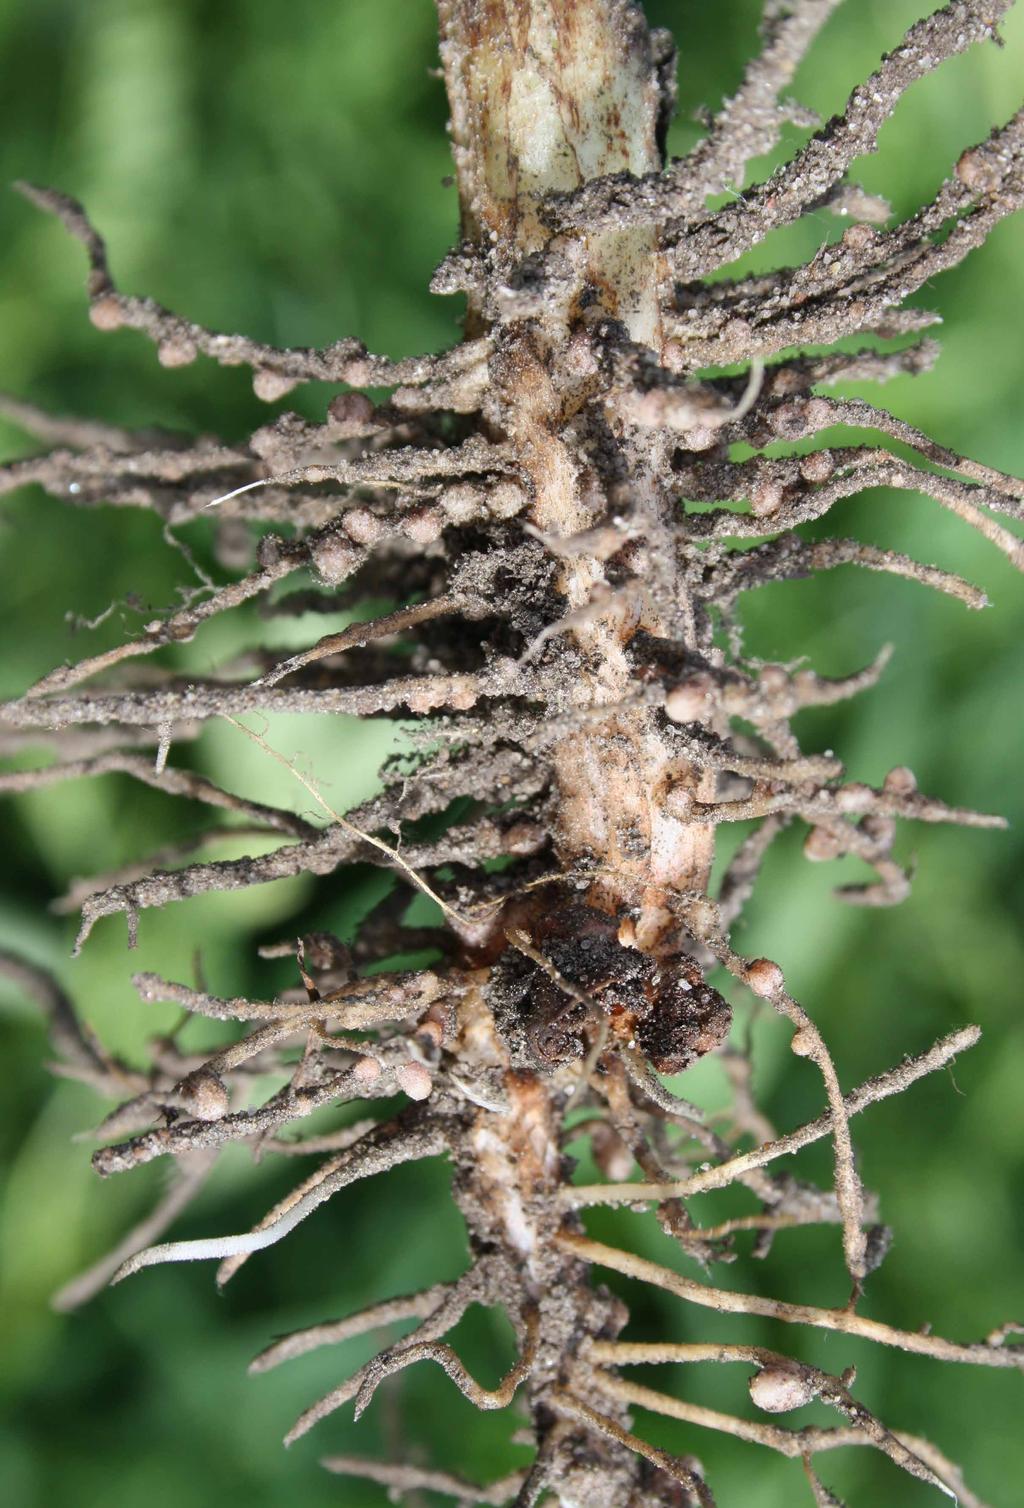 Lupin, bovete och honungsört har speciellt god förmåga att ta upp fosfor. Mykorrhizabildande arter kan medverka till ett bättre utnyttjande av hårt bunden fosfor i marken.